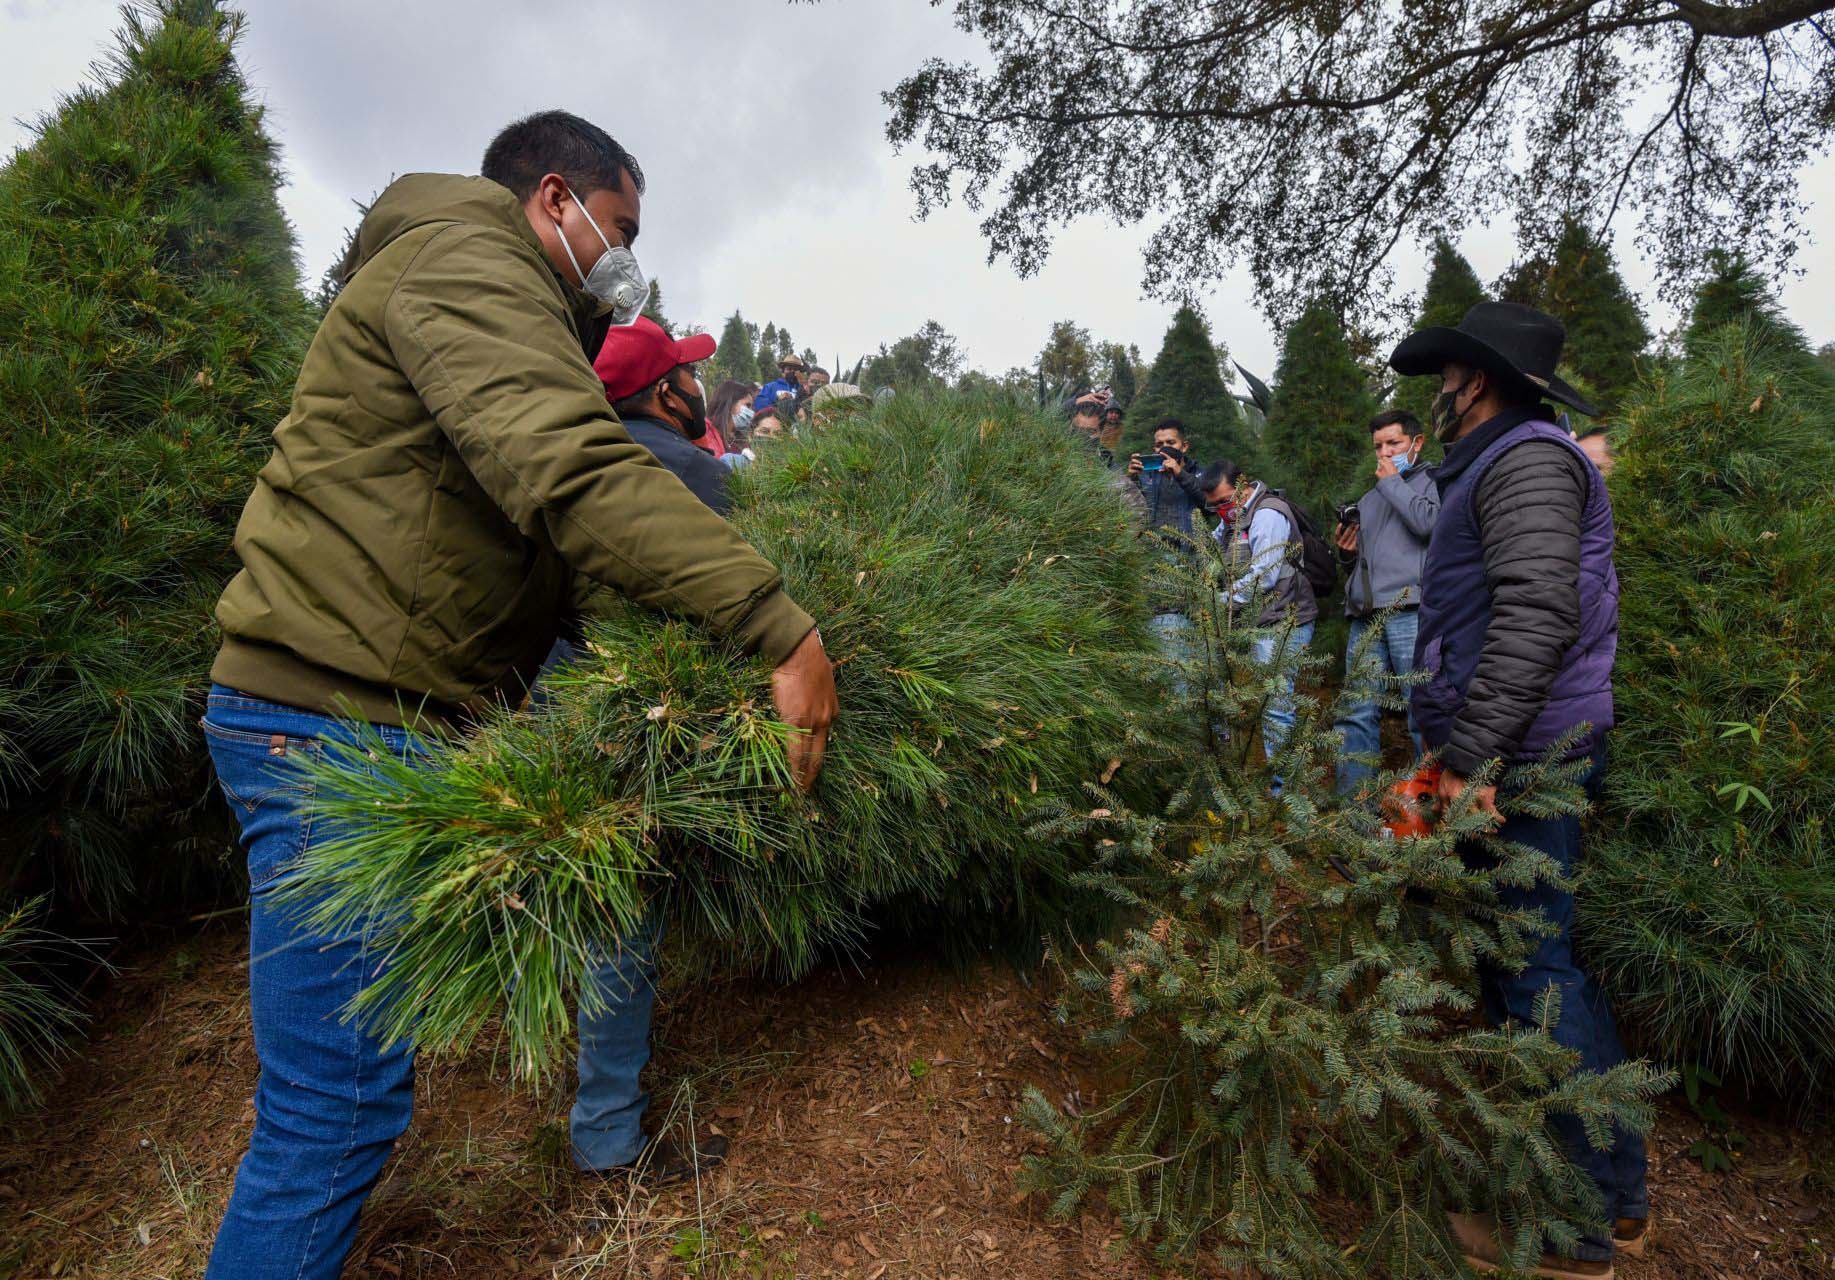 Venta de árboles navideños en el Estado de México; productores esperan buenas ventas a pesar de la contingencia por COVID-19 (Foto: Crisanta Espinosa Aguilar /Cuartoscuro)